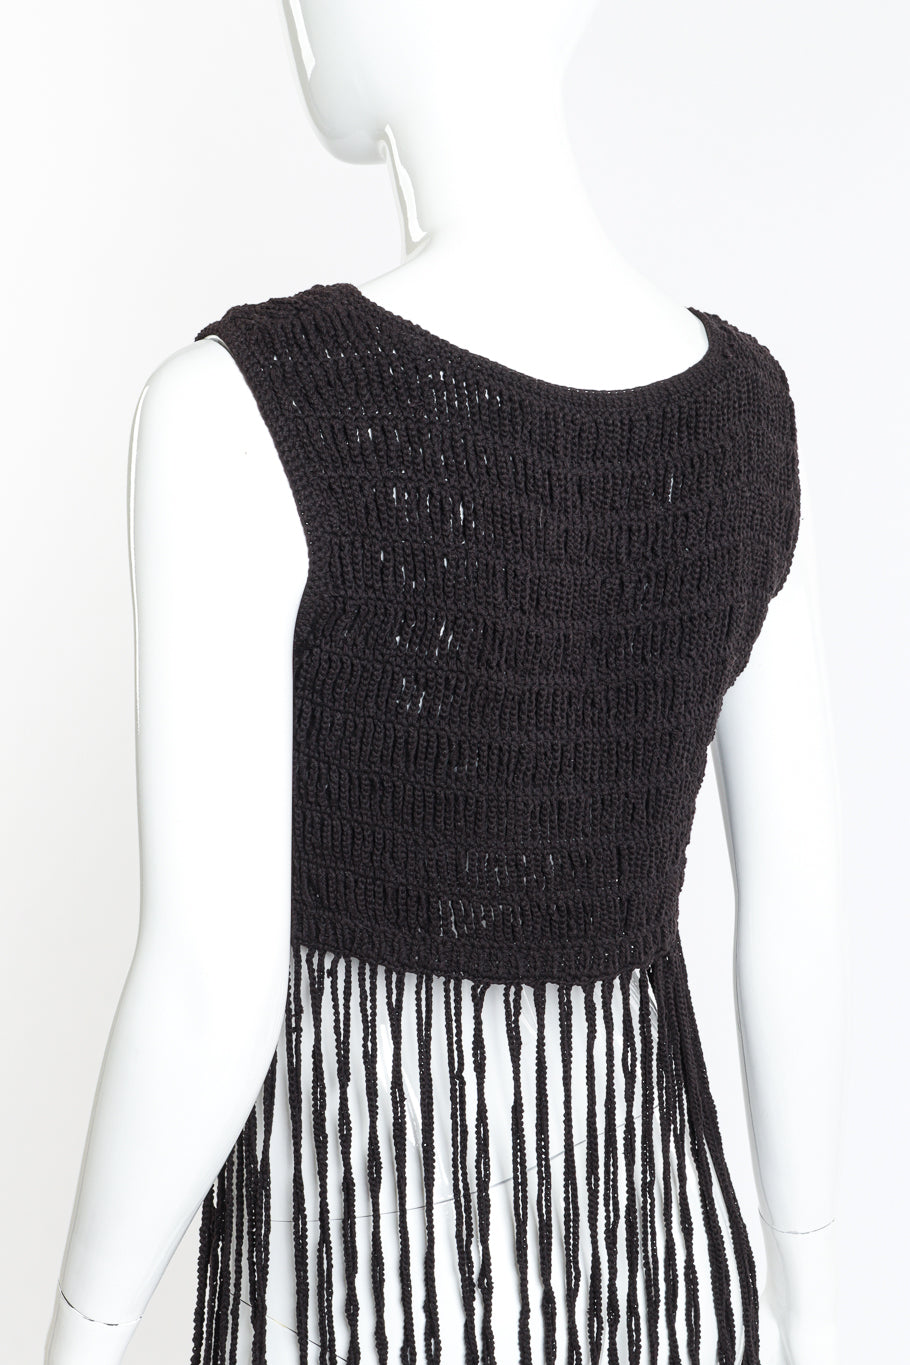 Vintage Vivienne Tam Crochet Fringe Crop Top back on mannequin closeup @recess la